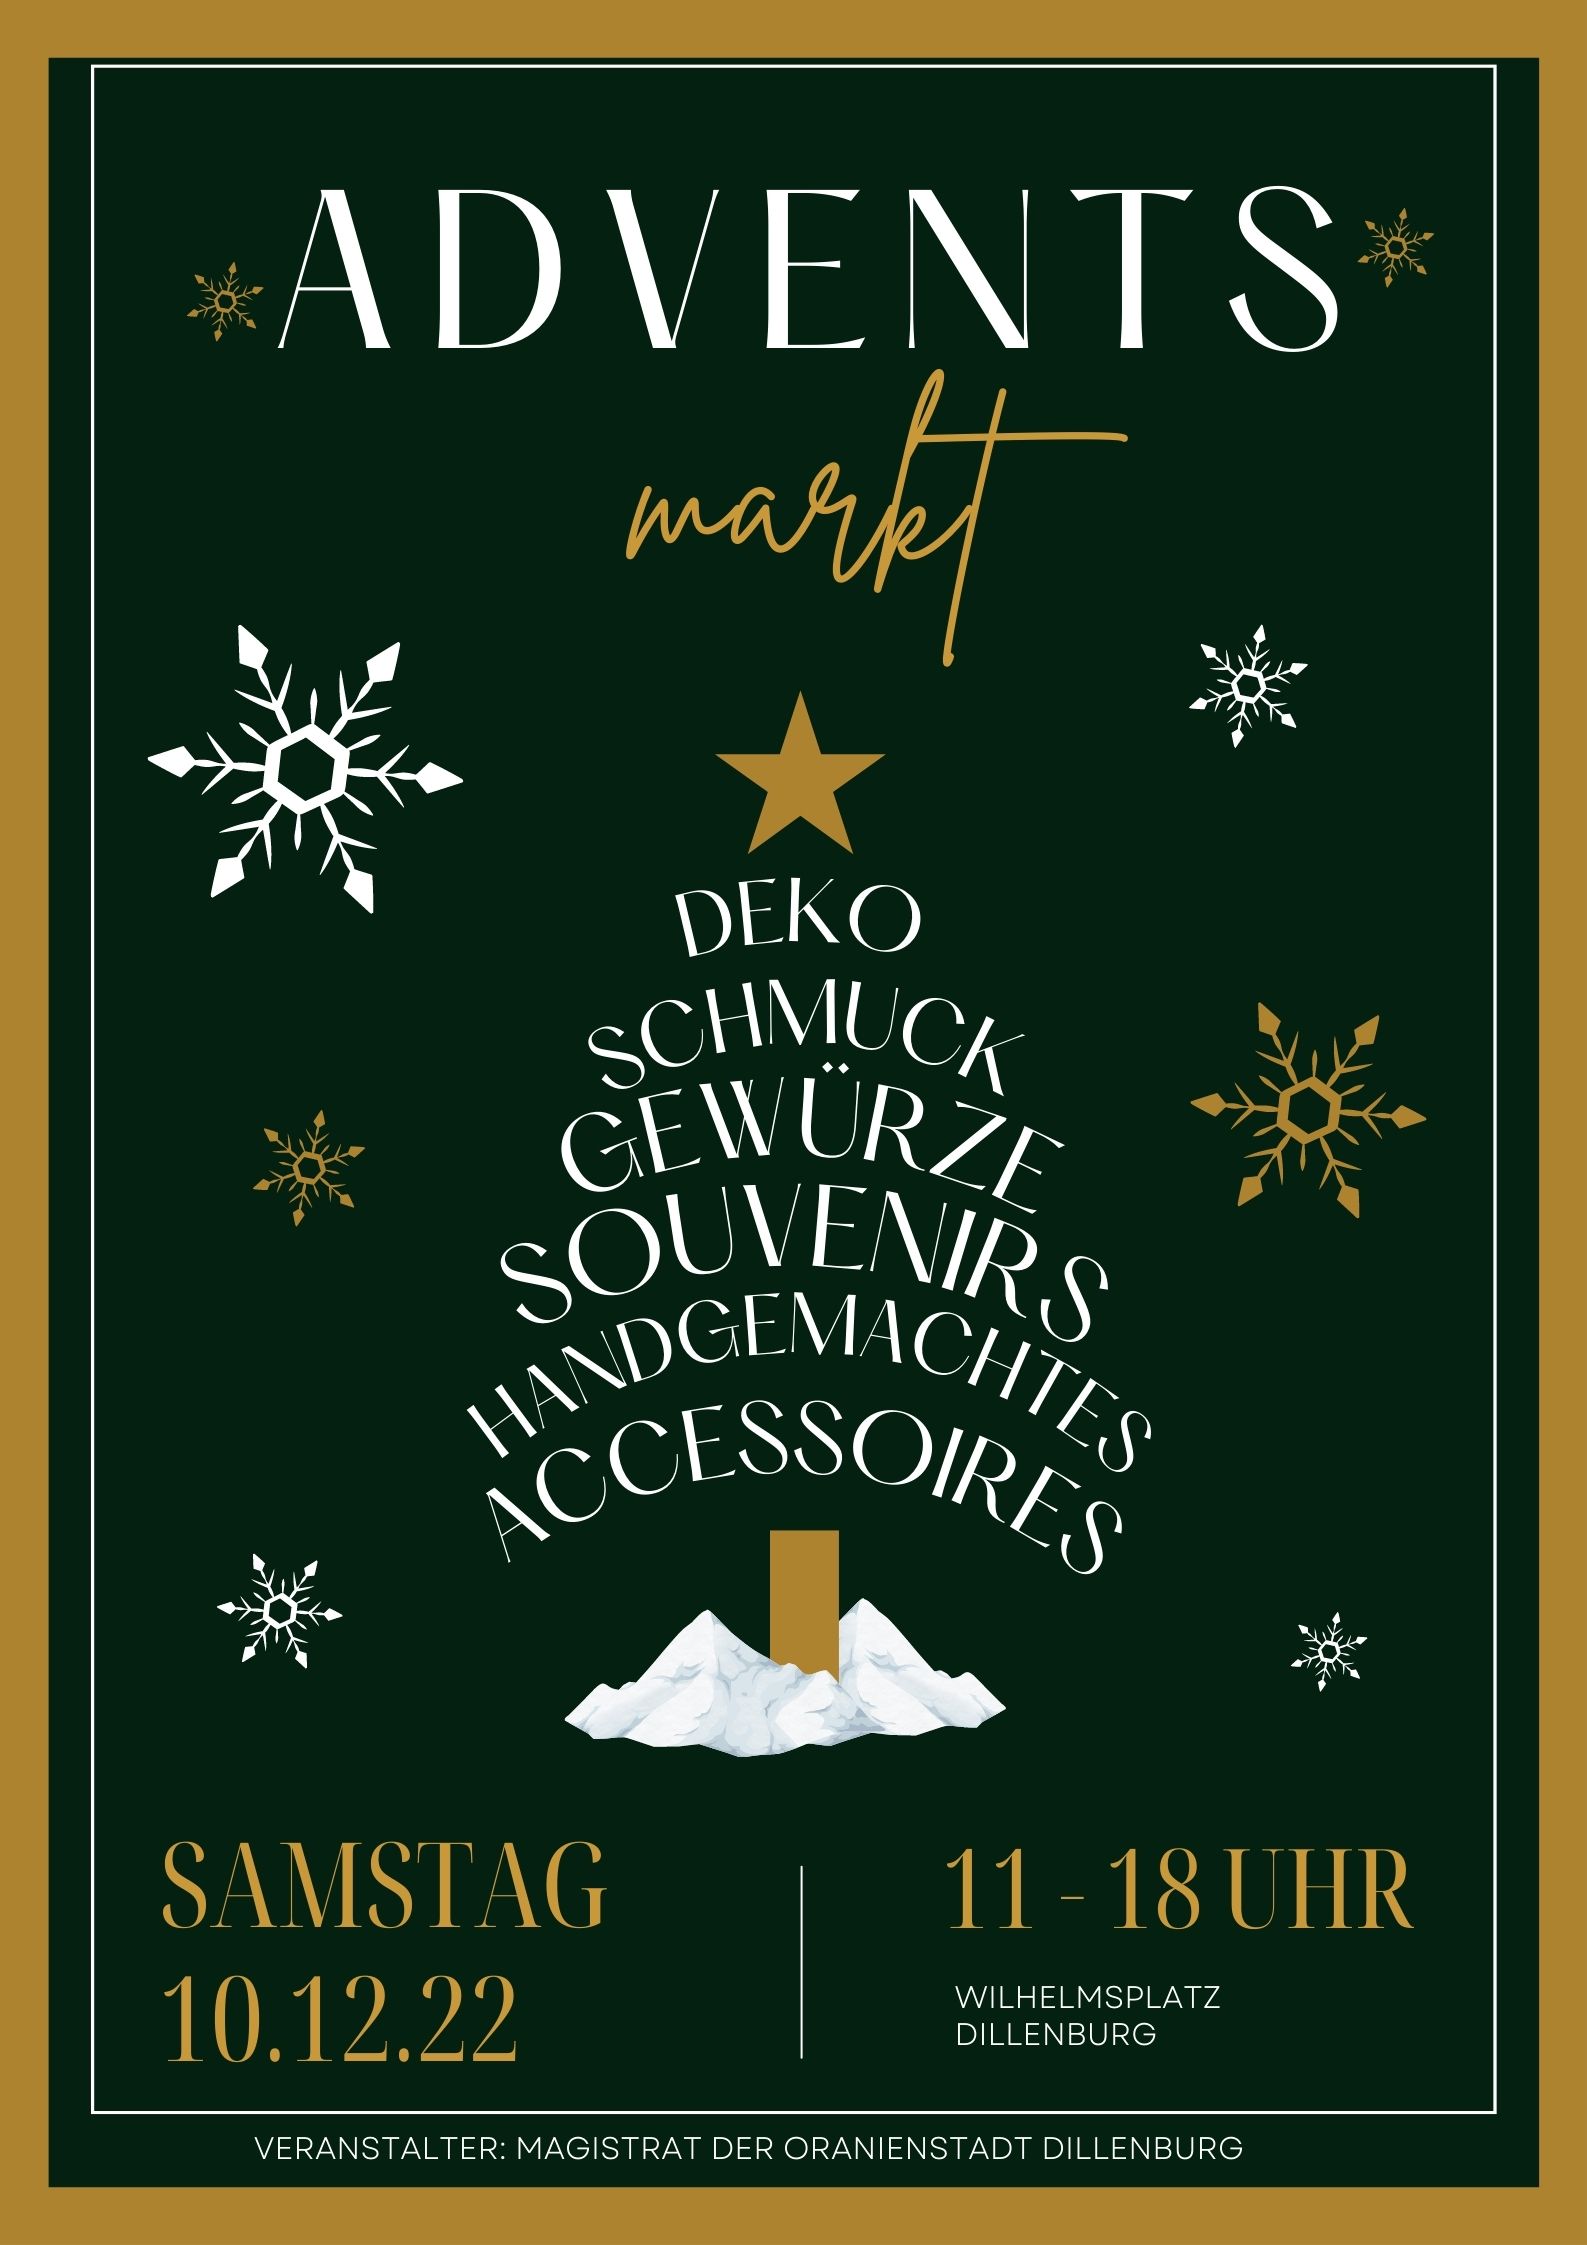 Ein Plakat mit schwarzem Hintergrund und weißer und goldener Aufschrift weist auf den Adventsmarkt am 10. Dezember hin. In Form eines Weihnachtsbaumes stehen die Worte Deko, Schmutz, Gewürze, Souveniers, Winterliches, Accessoires